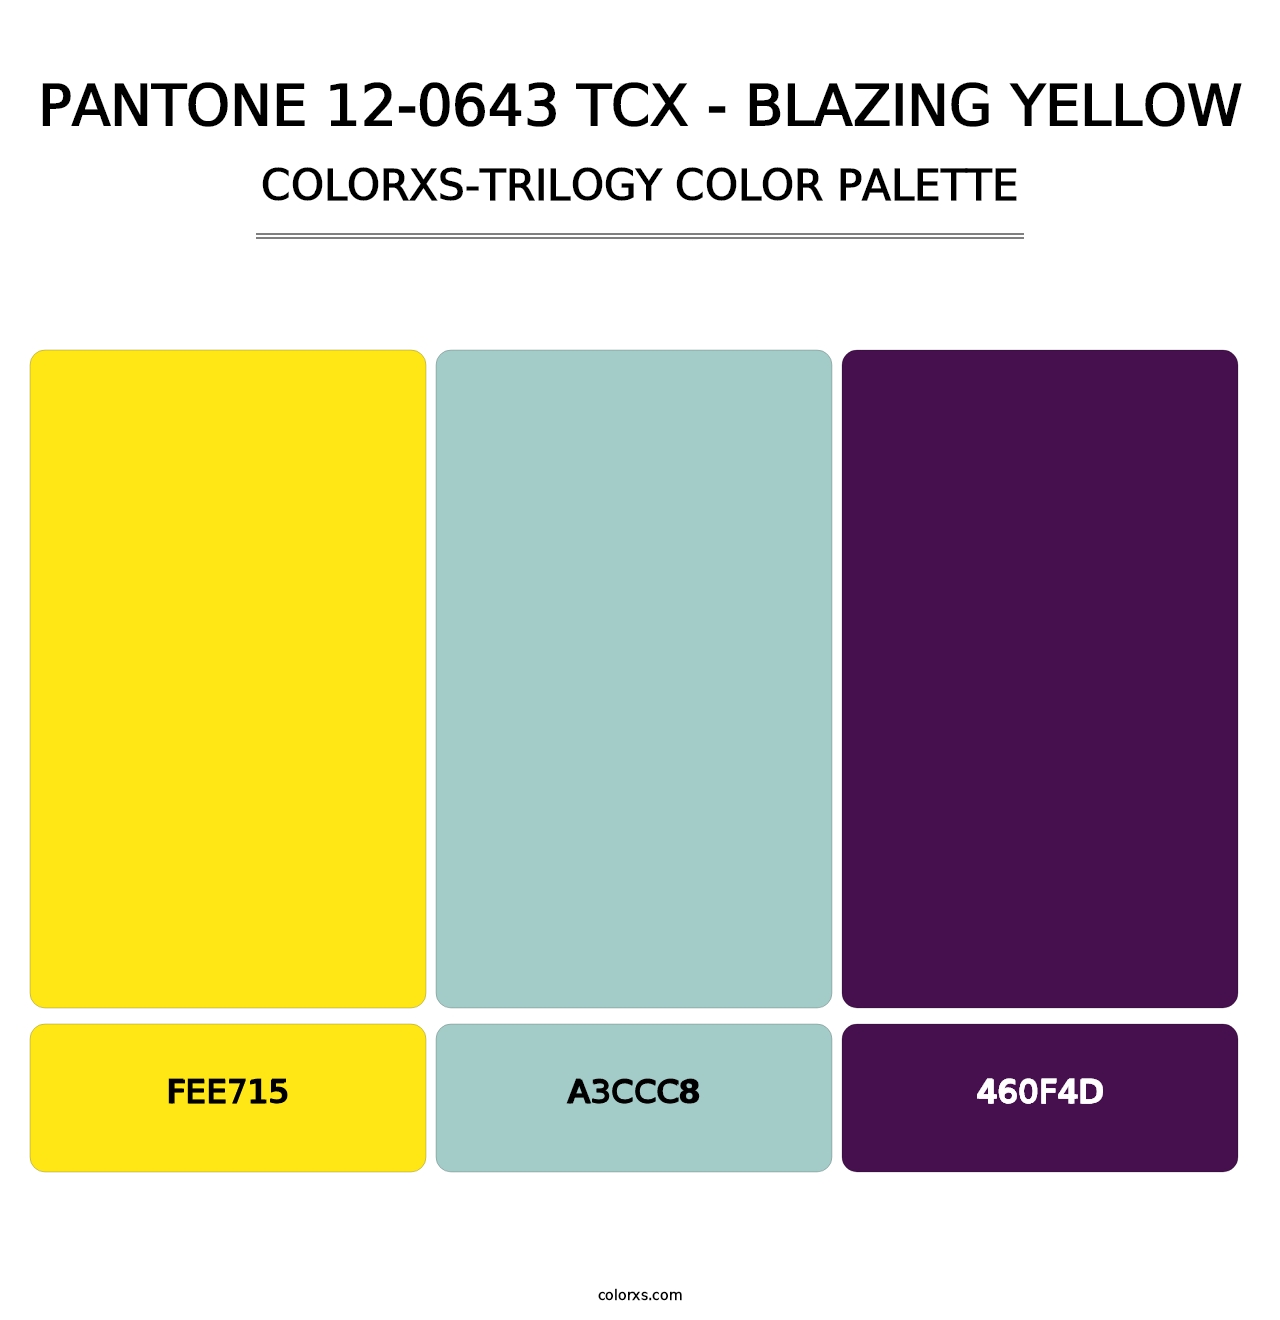 PANTONE 12-0643 TCX - Blazing Yellow - Colorxs Trilogy Palette